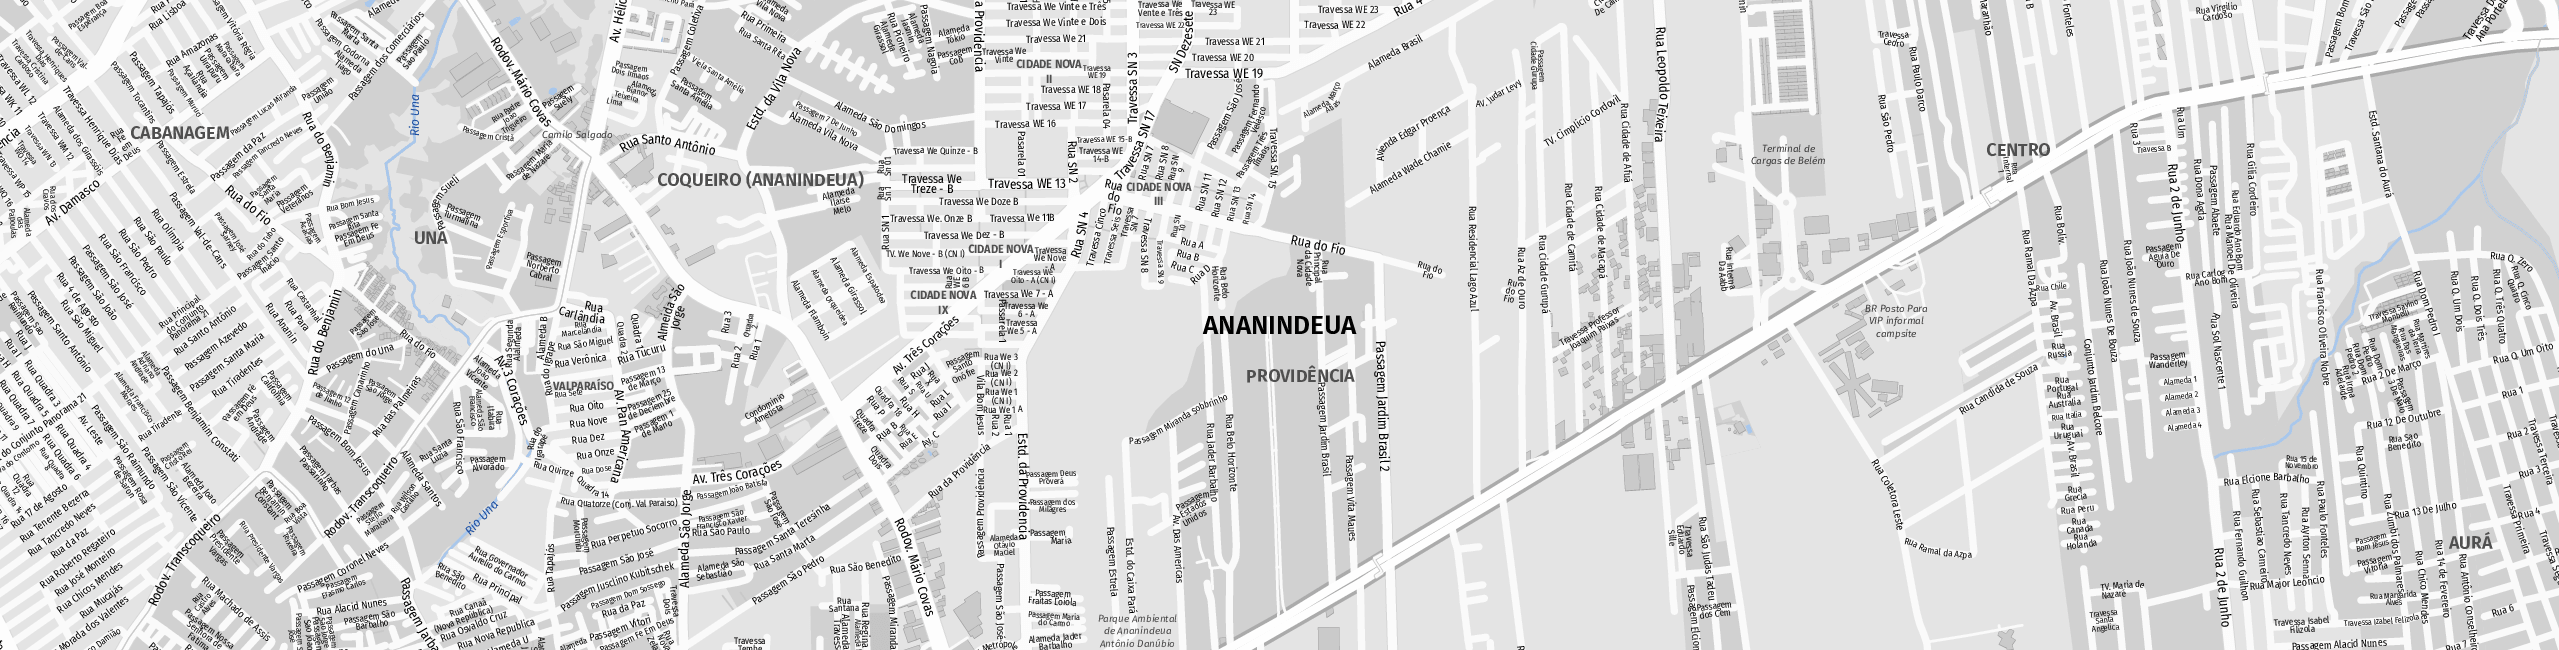 Stadtplan Ananindeua zum Downloaden.